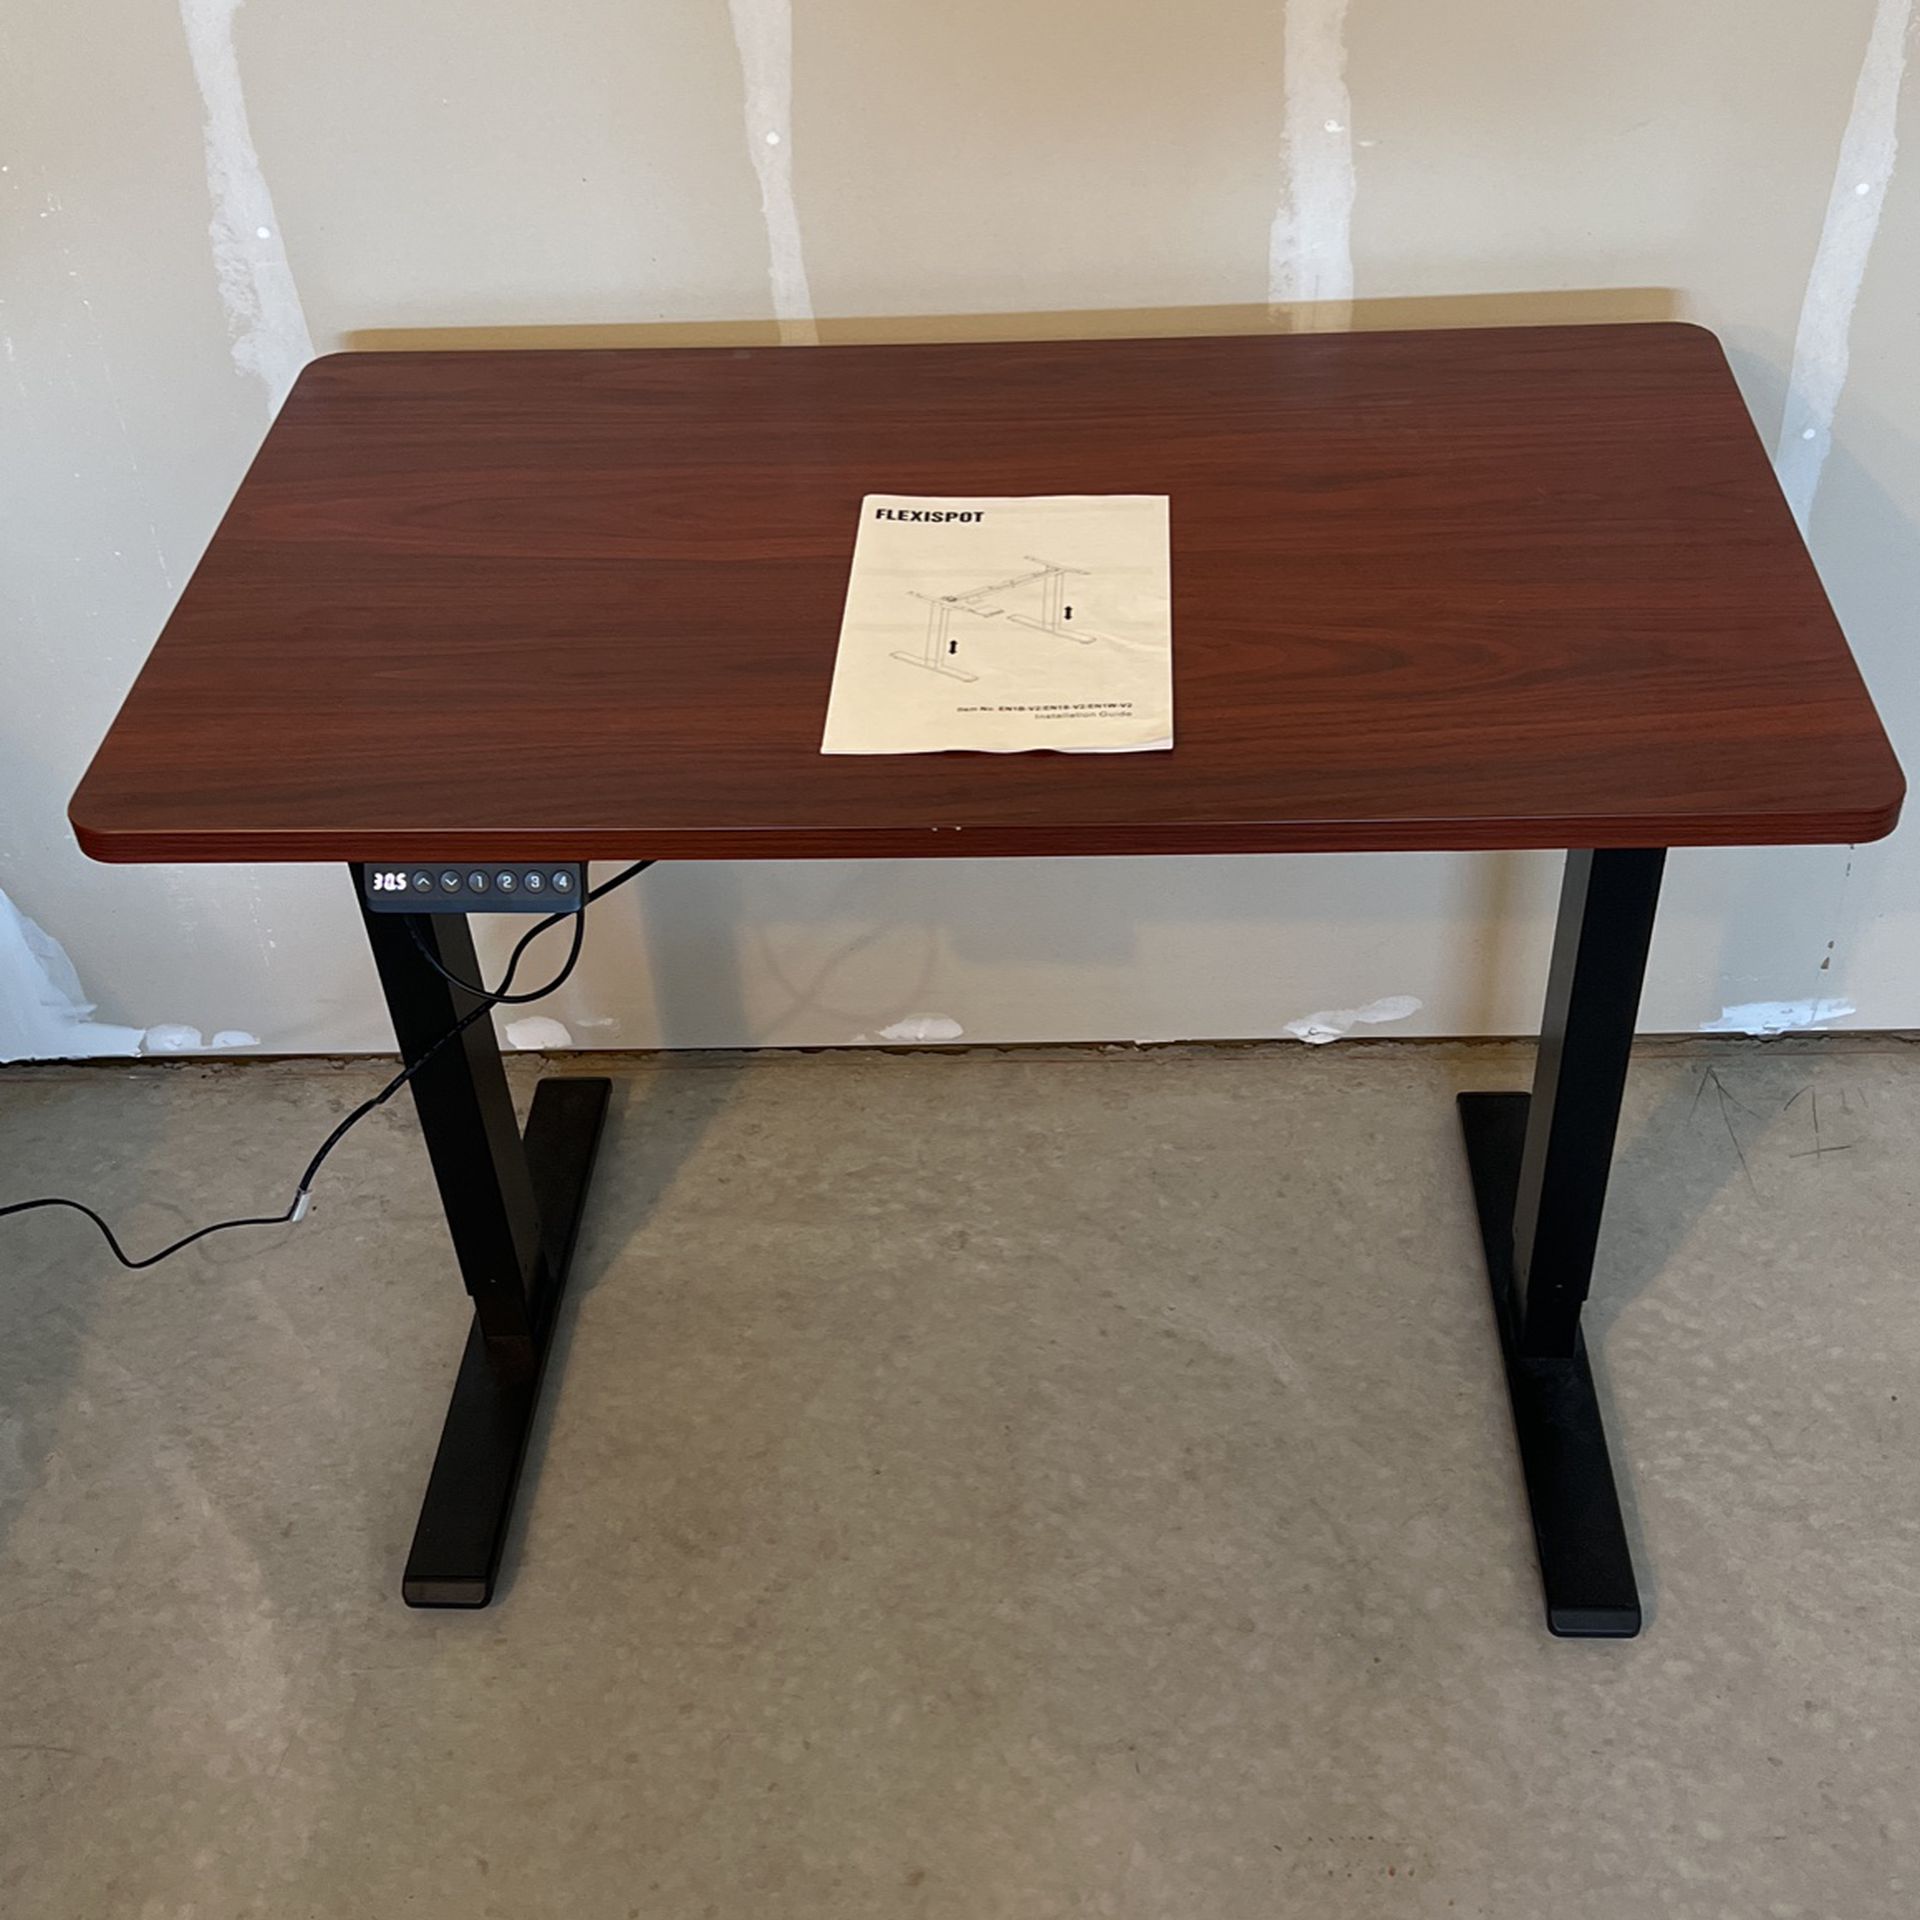 FLEXISPOT Standing Desk 40 X 24”